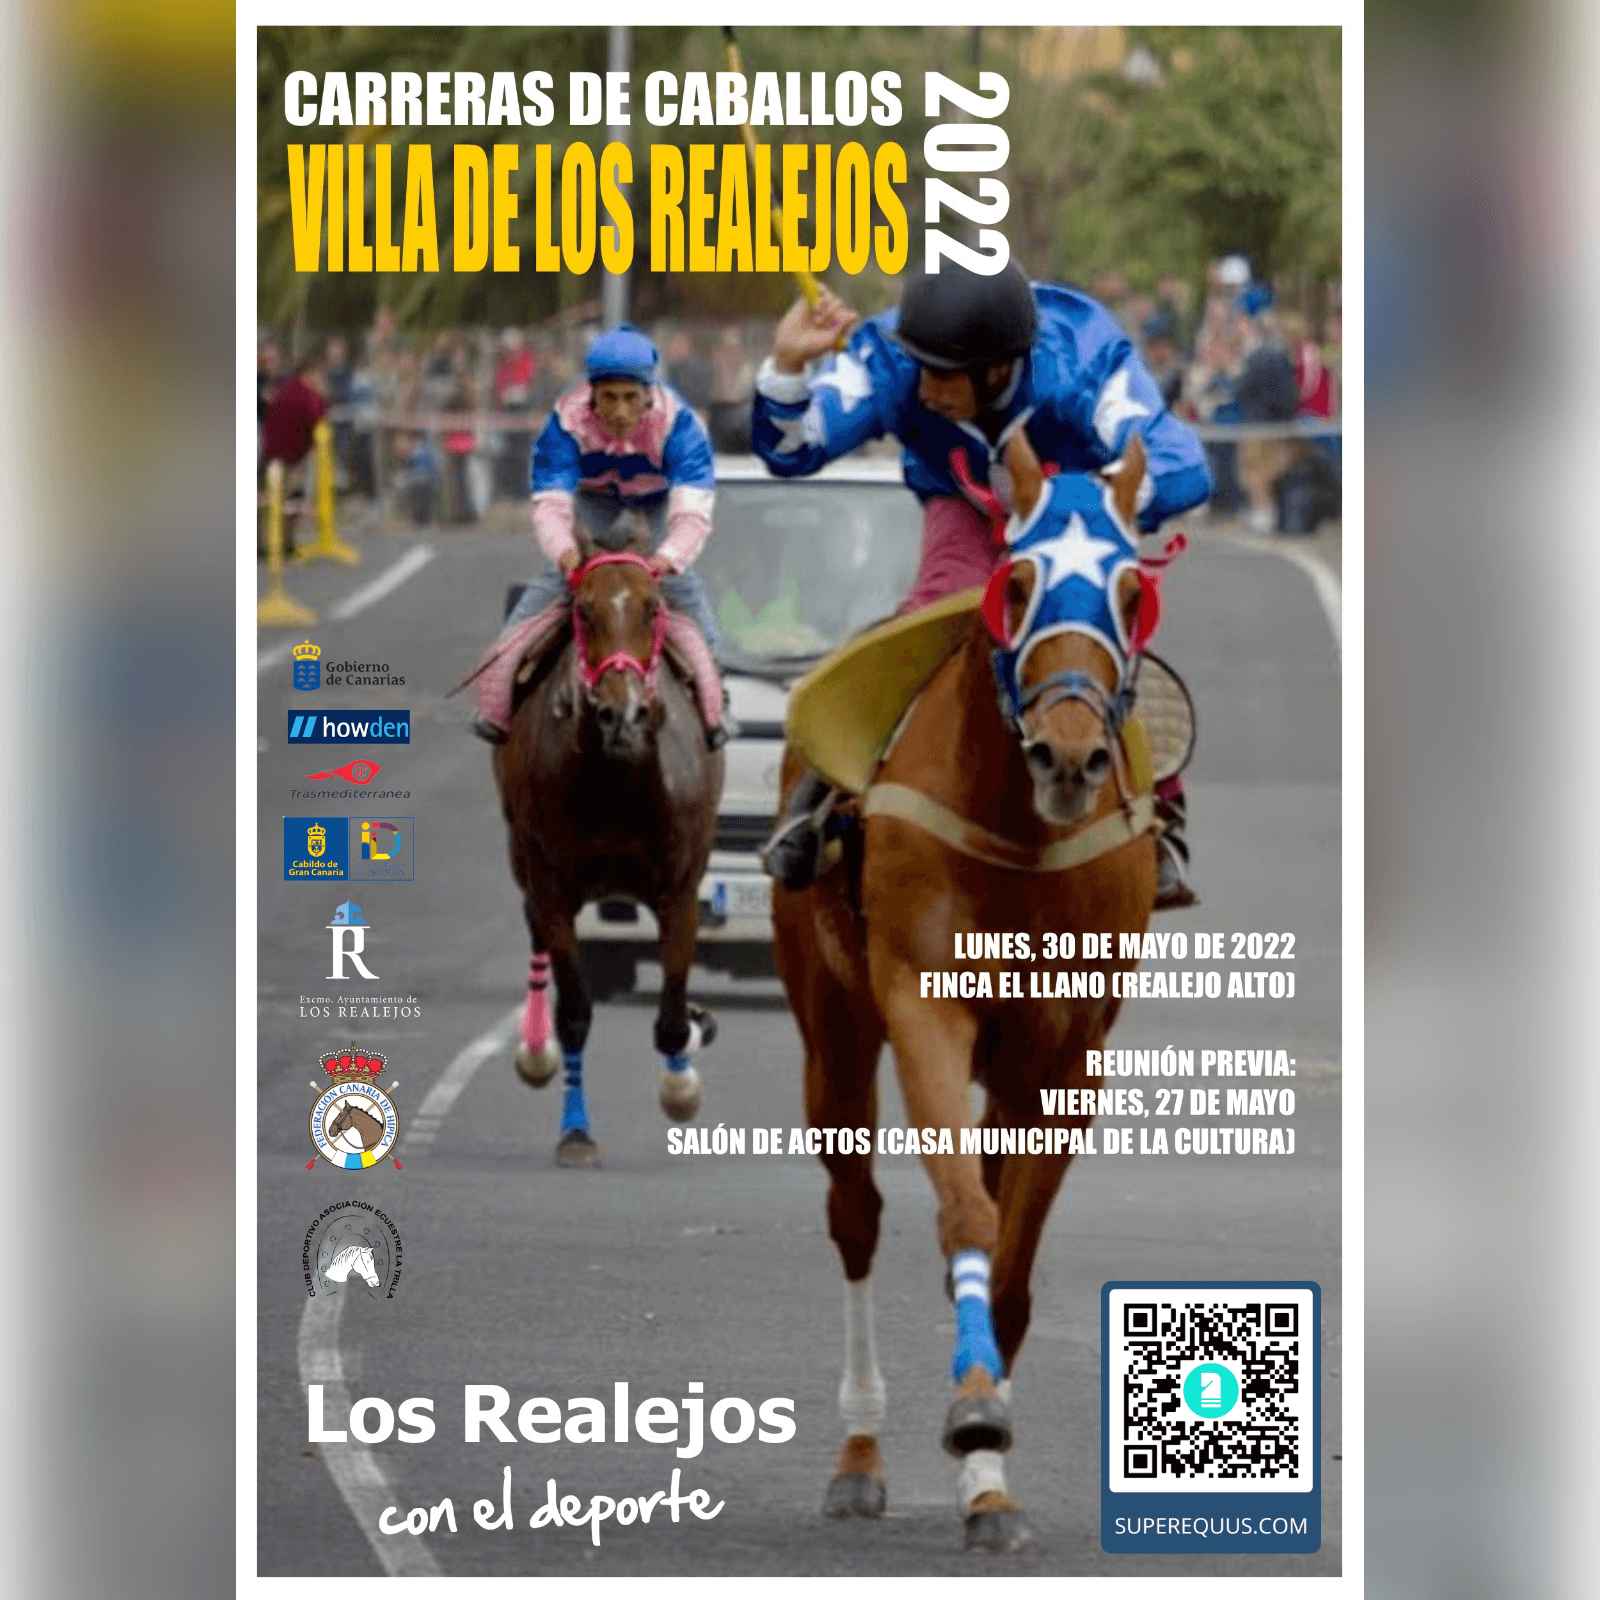 Poster of Carreras de Caballos Villa de los Realejos 2022